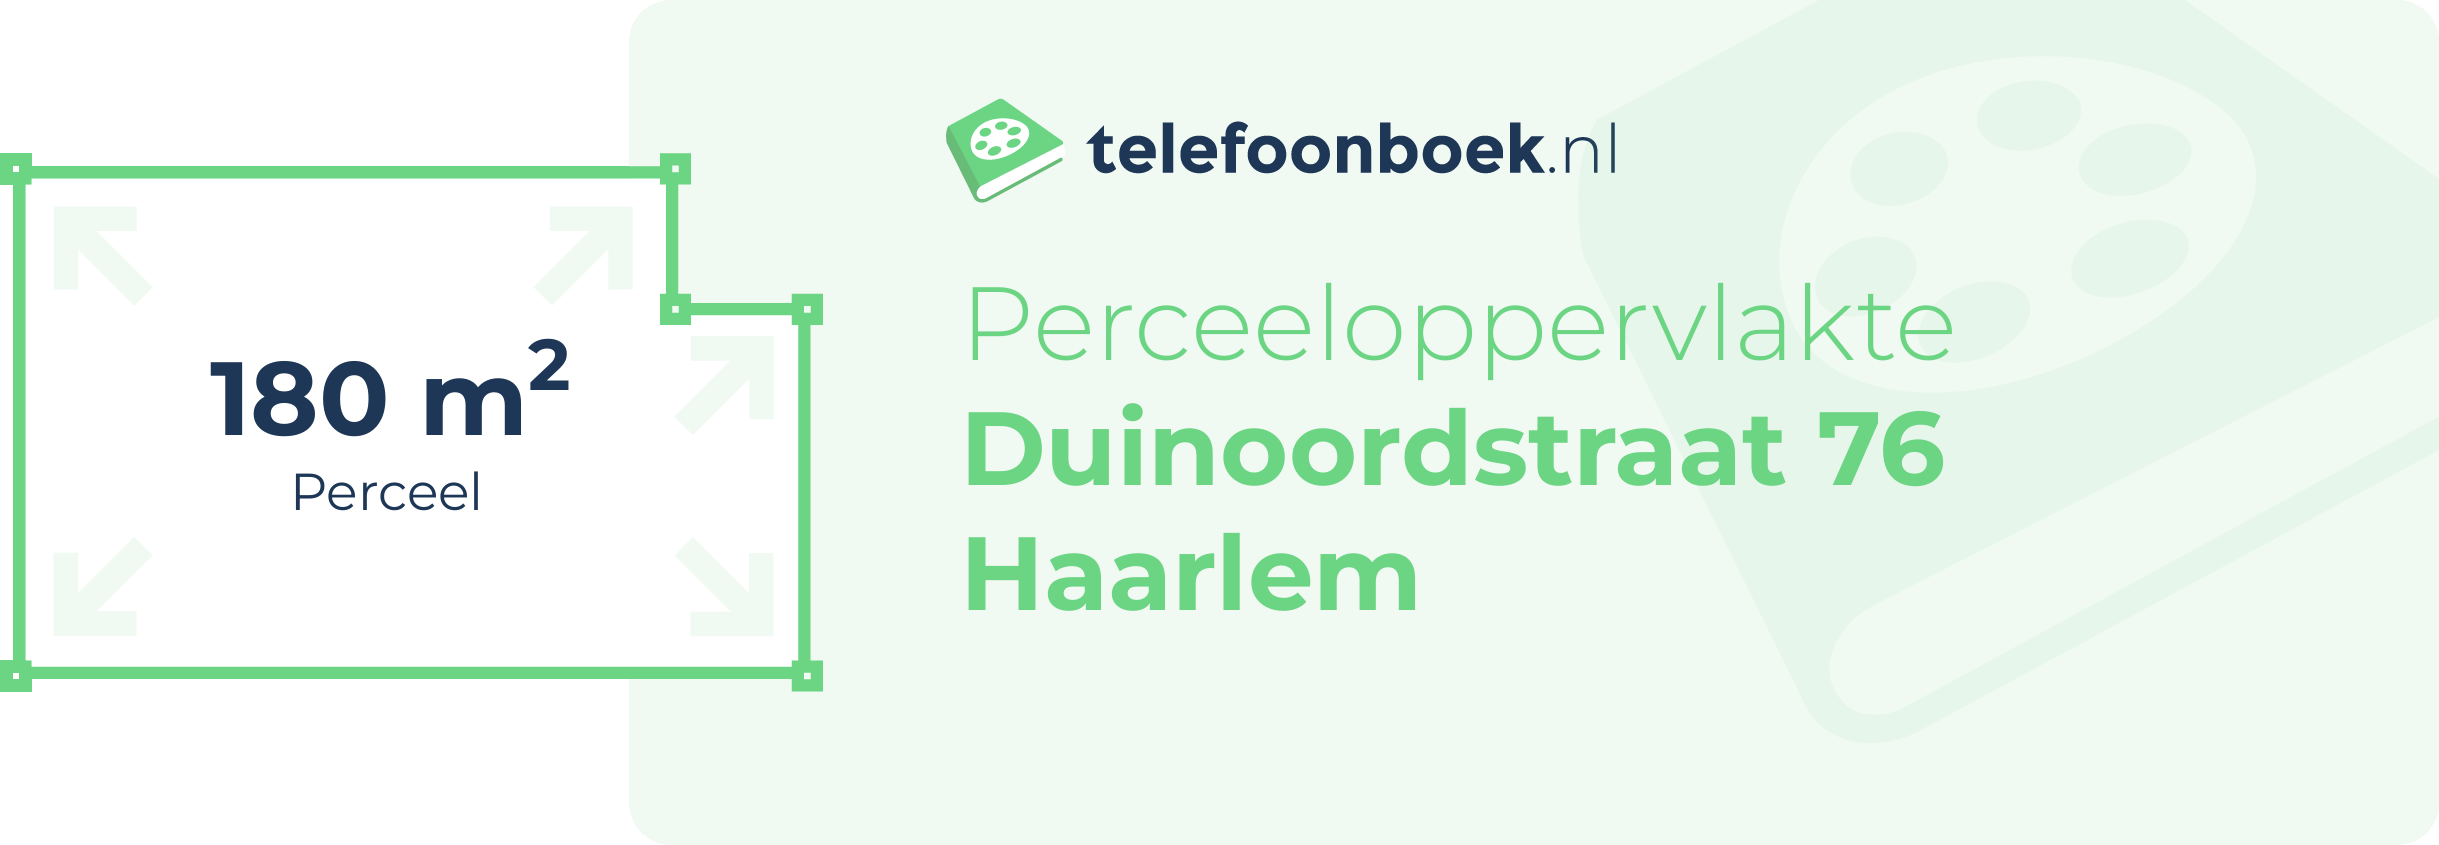 Perceeloppervlakte Duinoordstraat 76 Haarlem